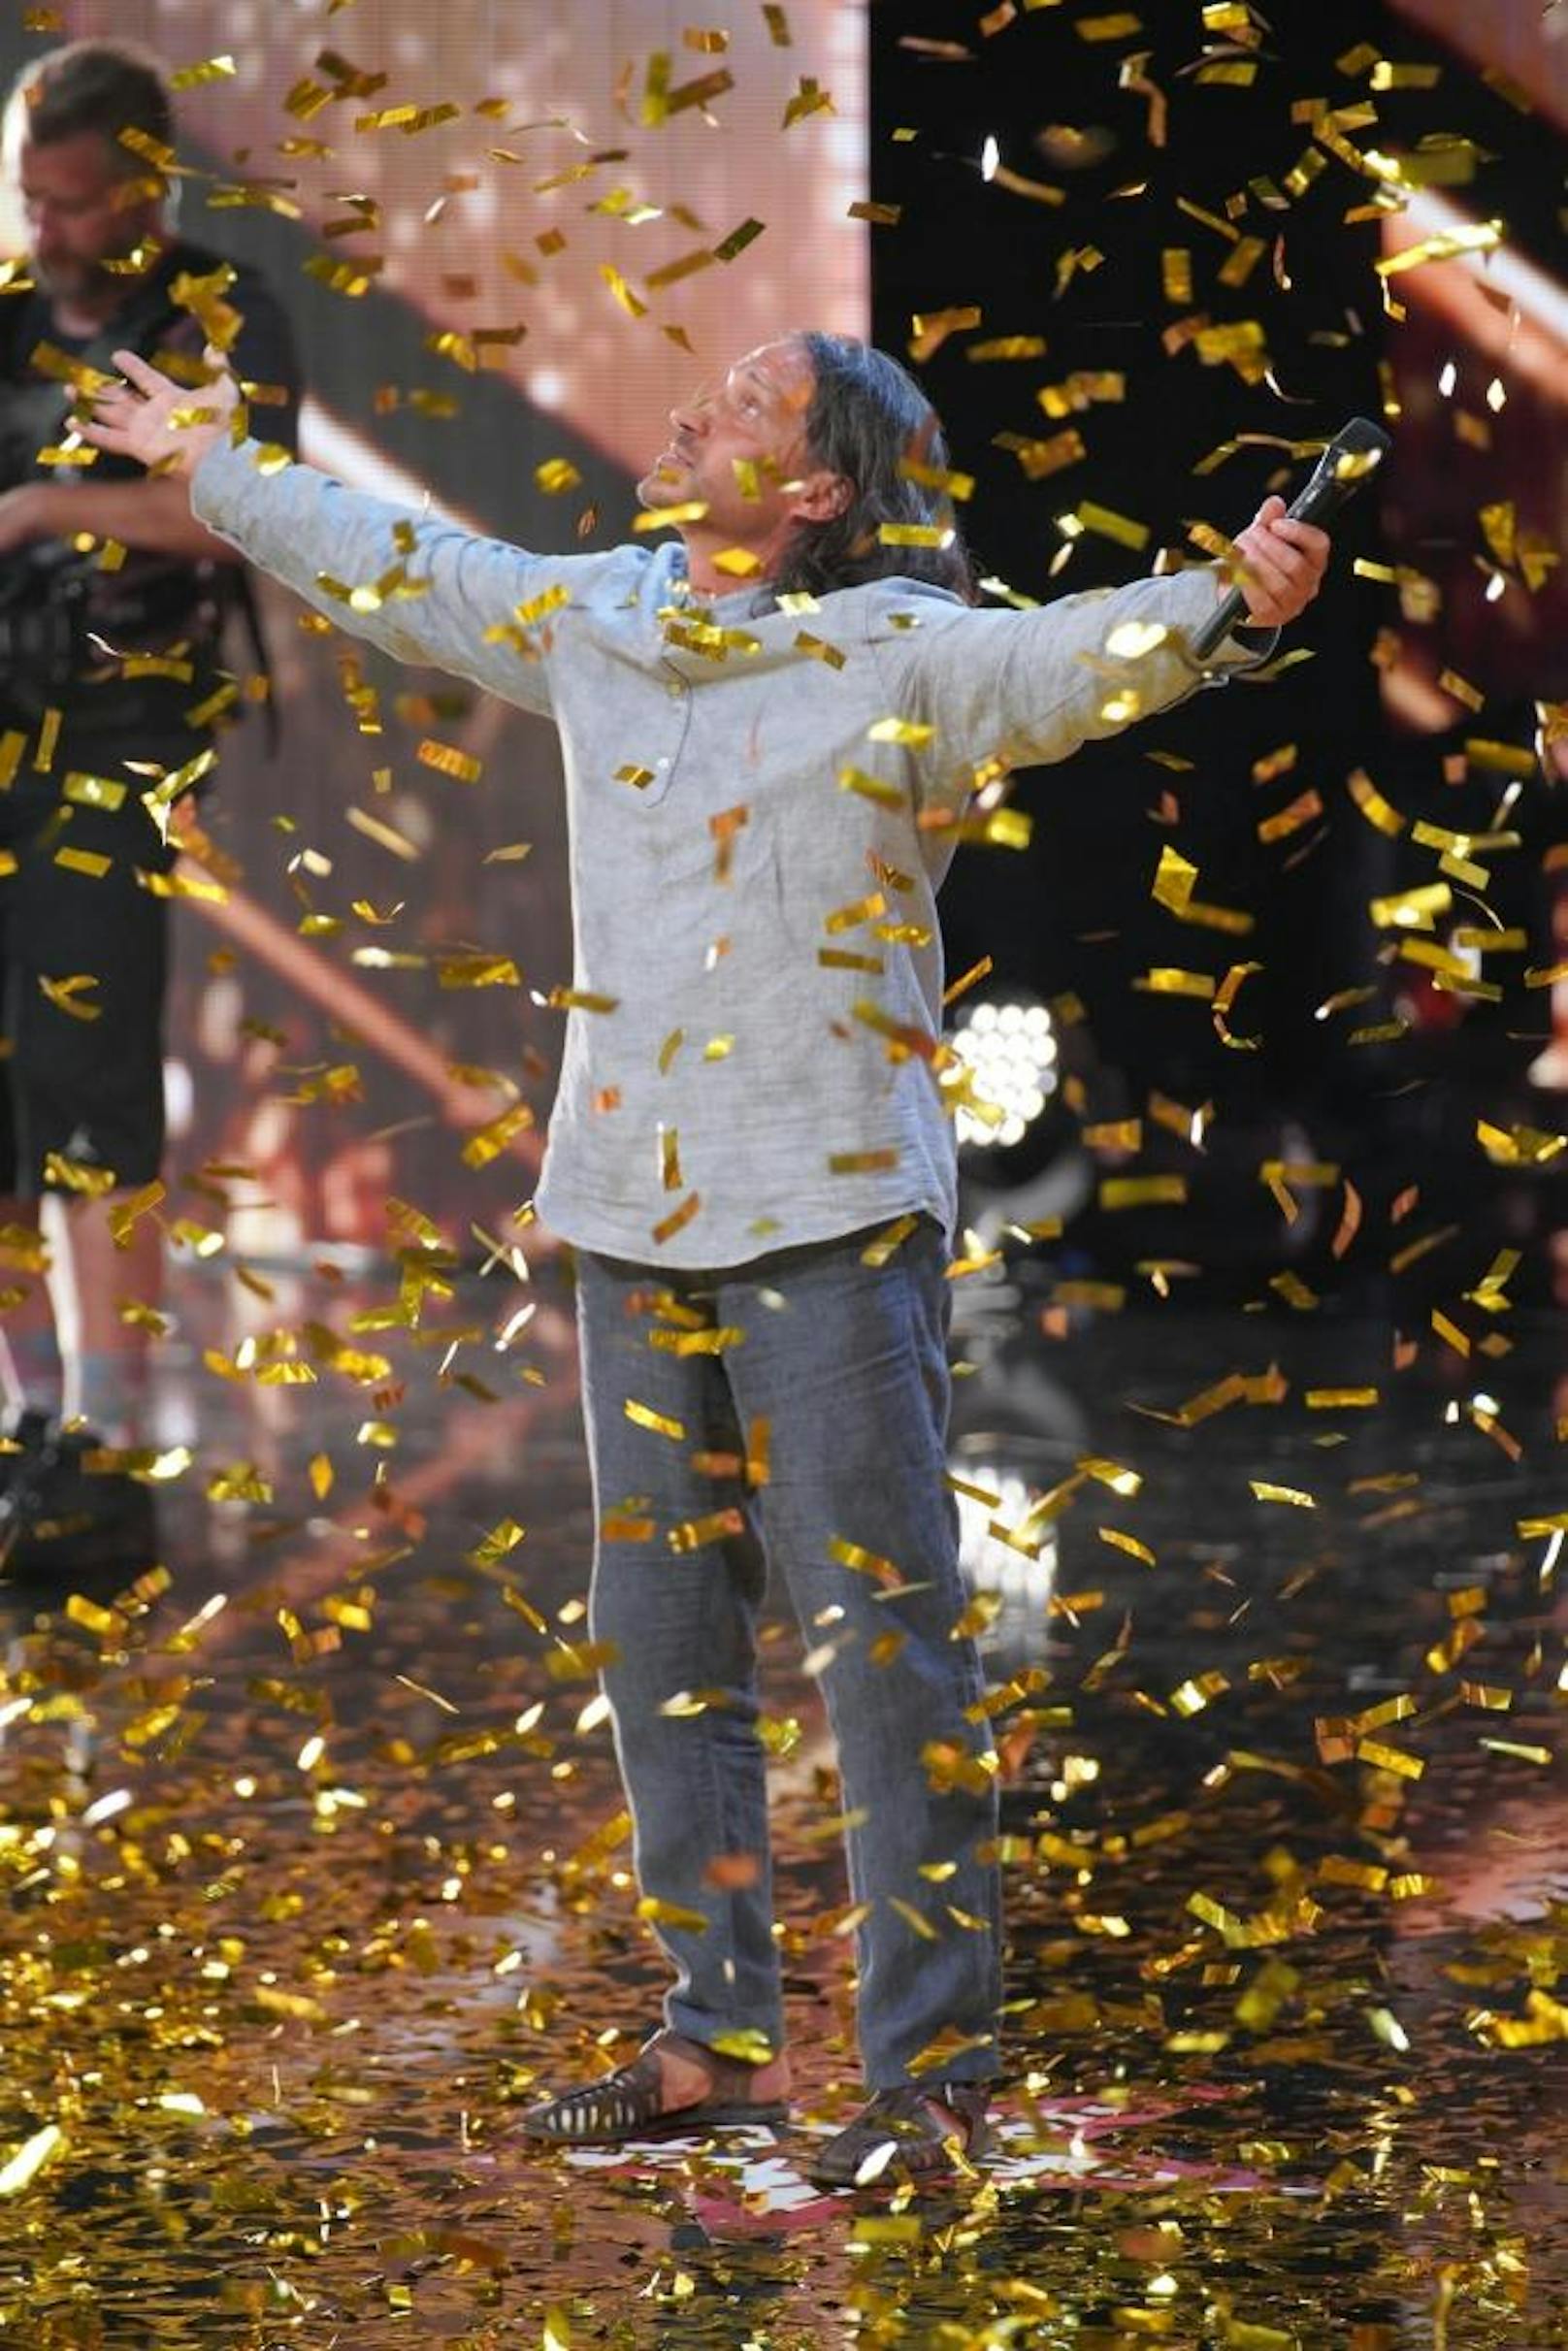 Gennady Tkachenko-Papizh - Sänger und Stimmenimitator aus Berlin - landete dank des "Goldenen Buzzers" direkt im Finale.  